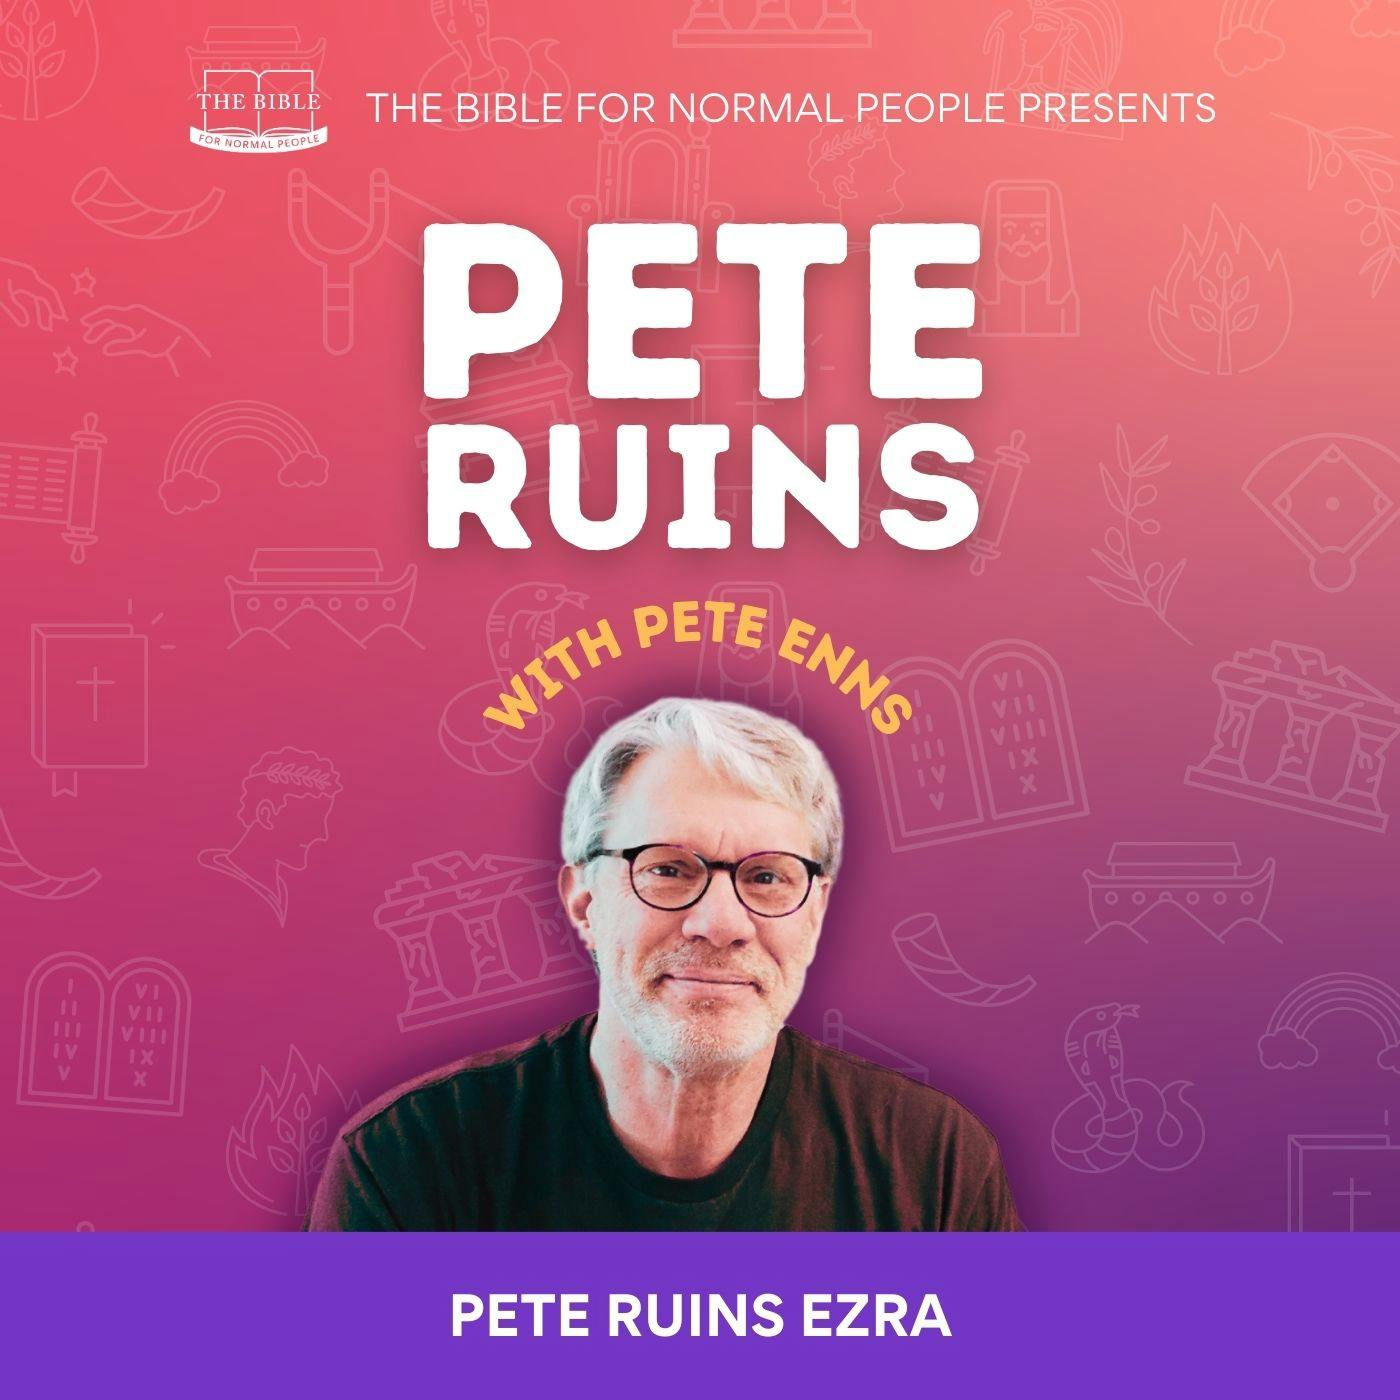 [Bible] Episode 271: Pete Enns - Pete Ruins Ezra